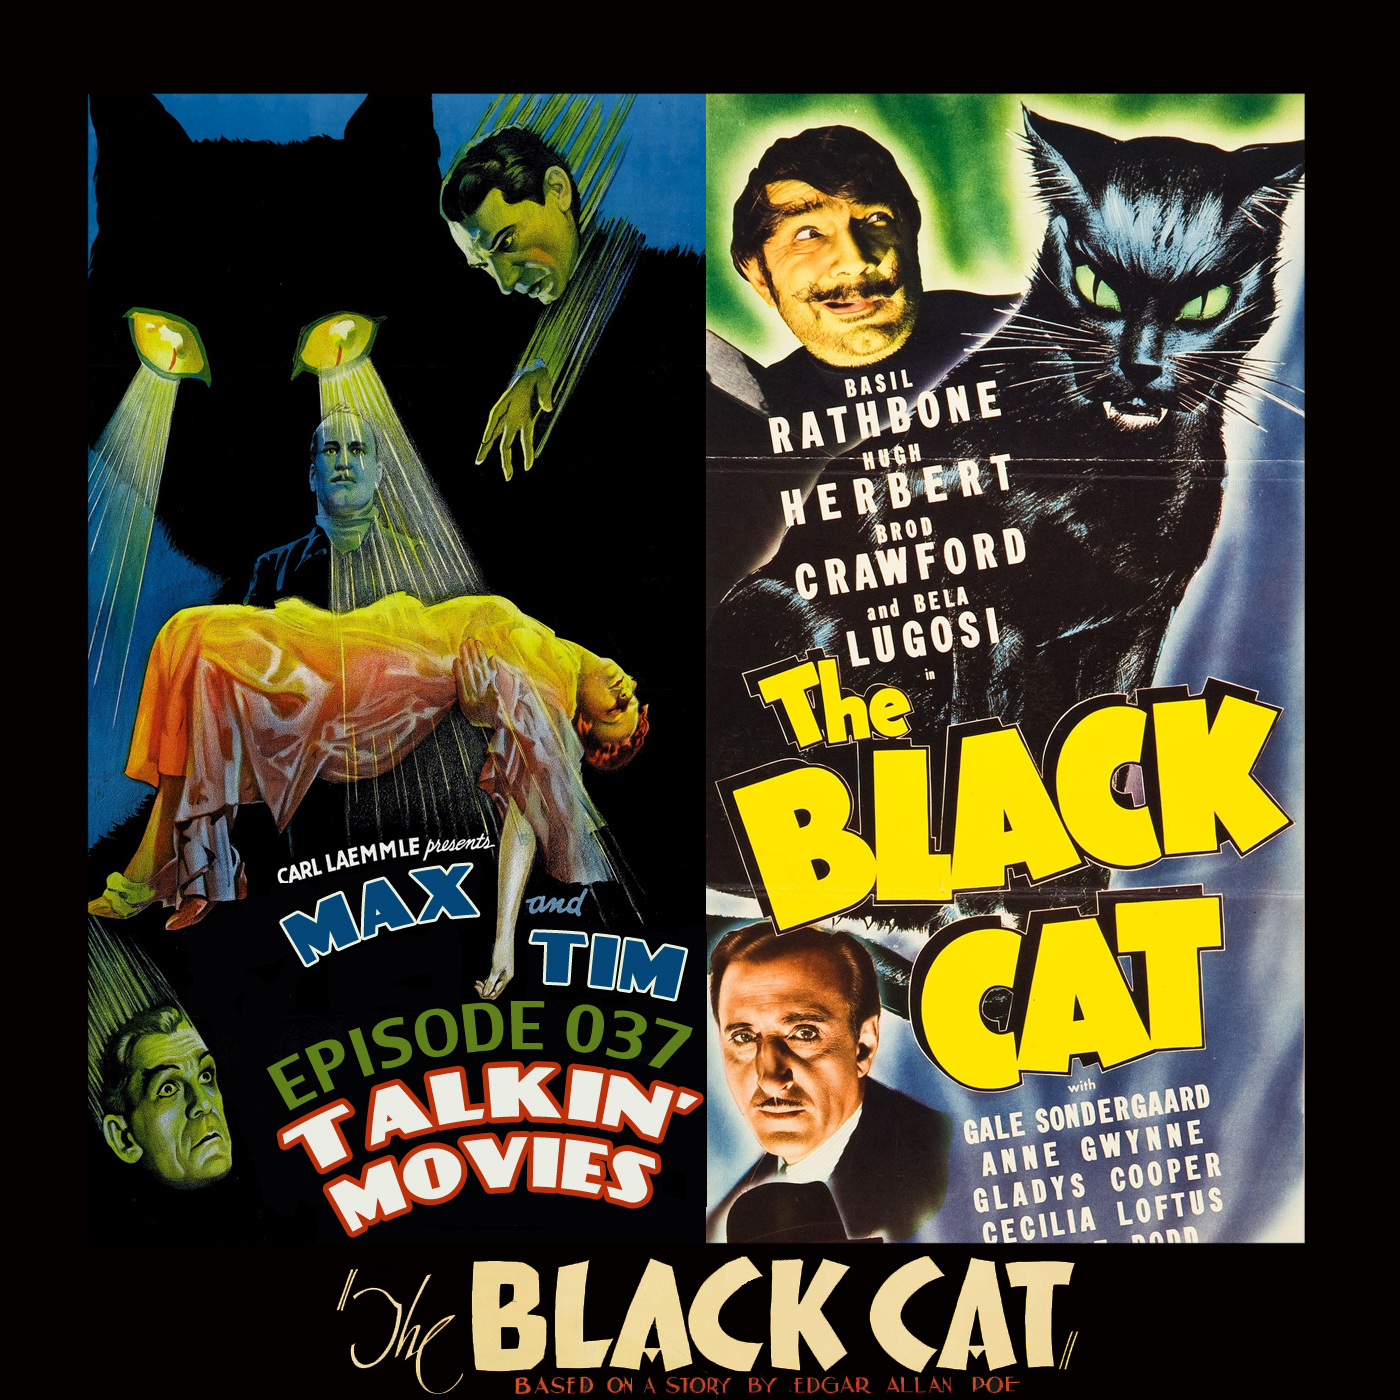 037 - The Black Cat